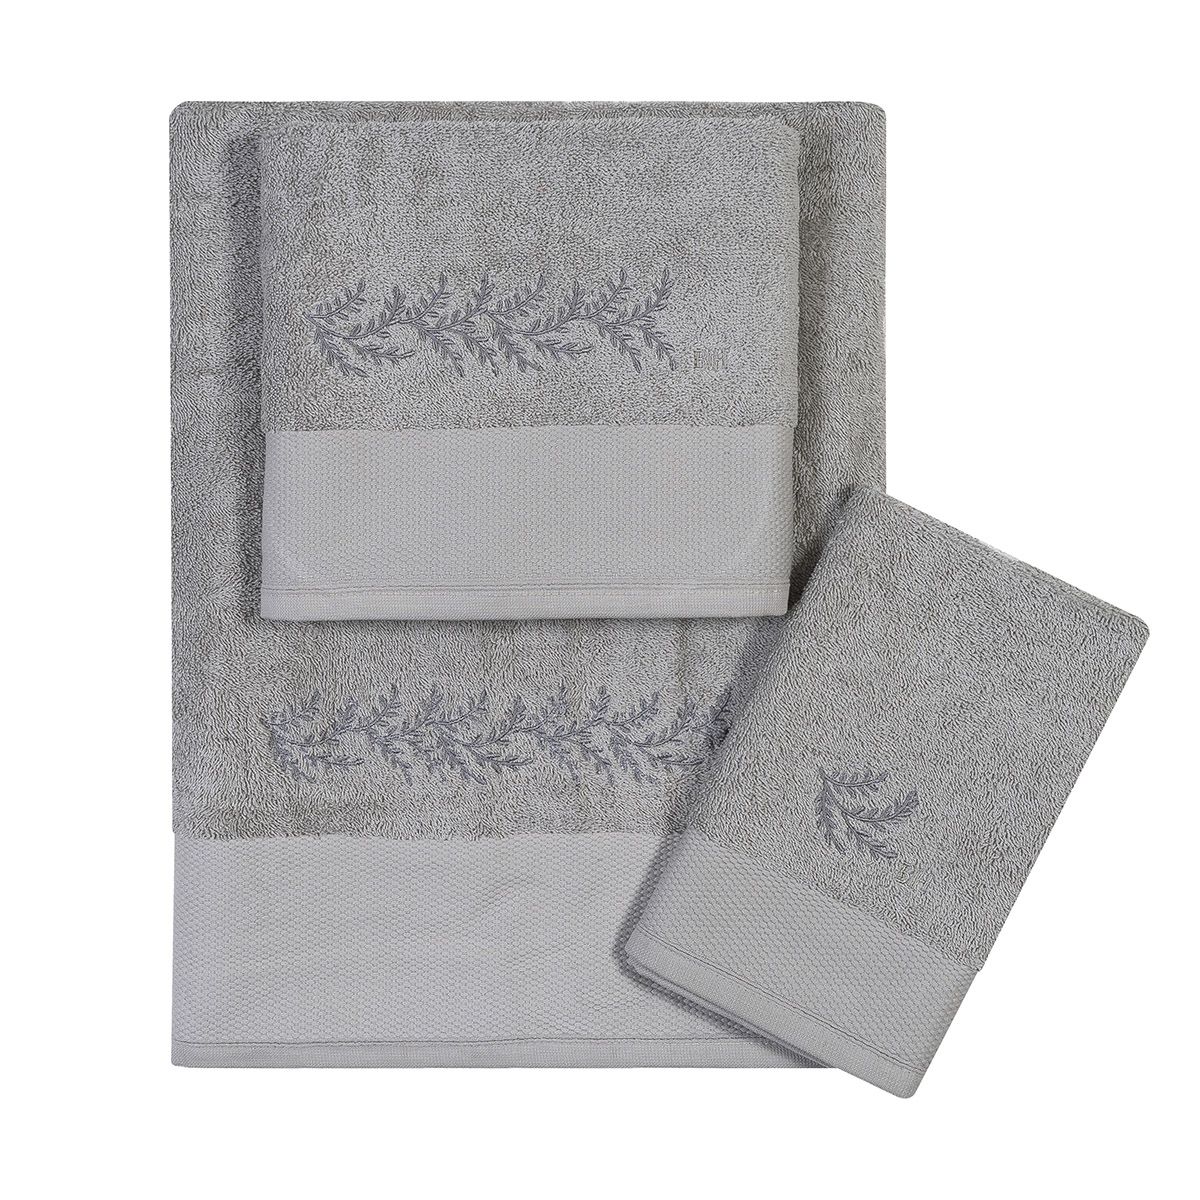 Πετσέτες με κέντημα σετ 3τμχ Art 3374 grey beauty home